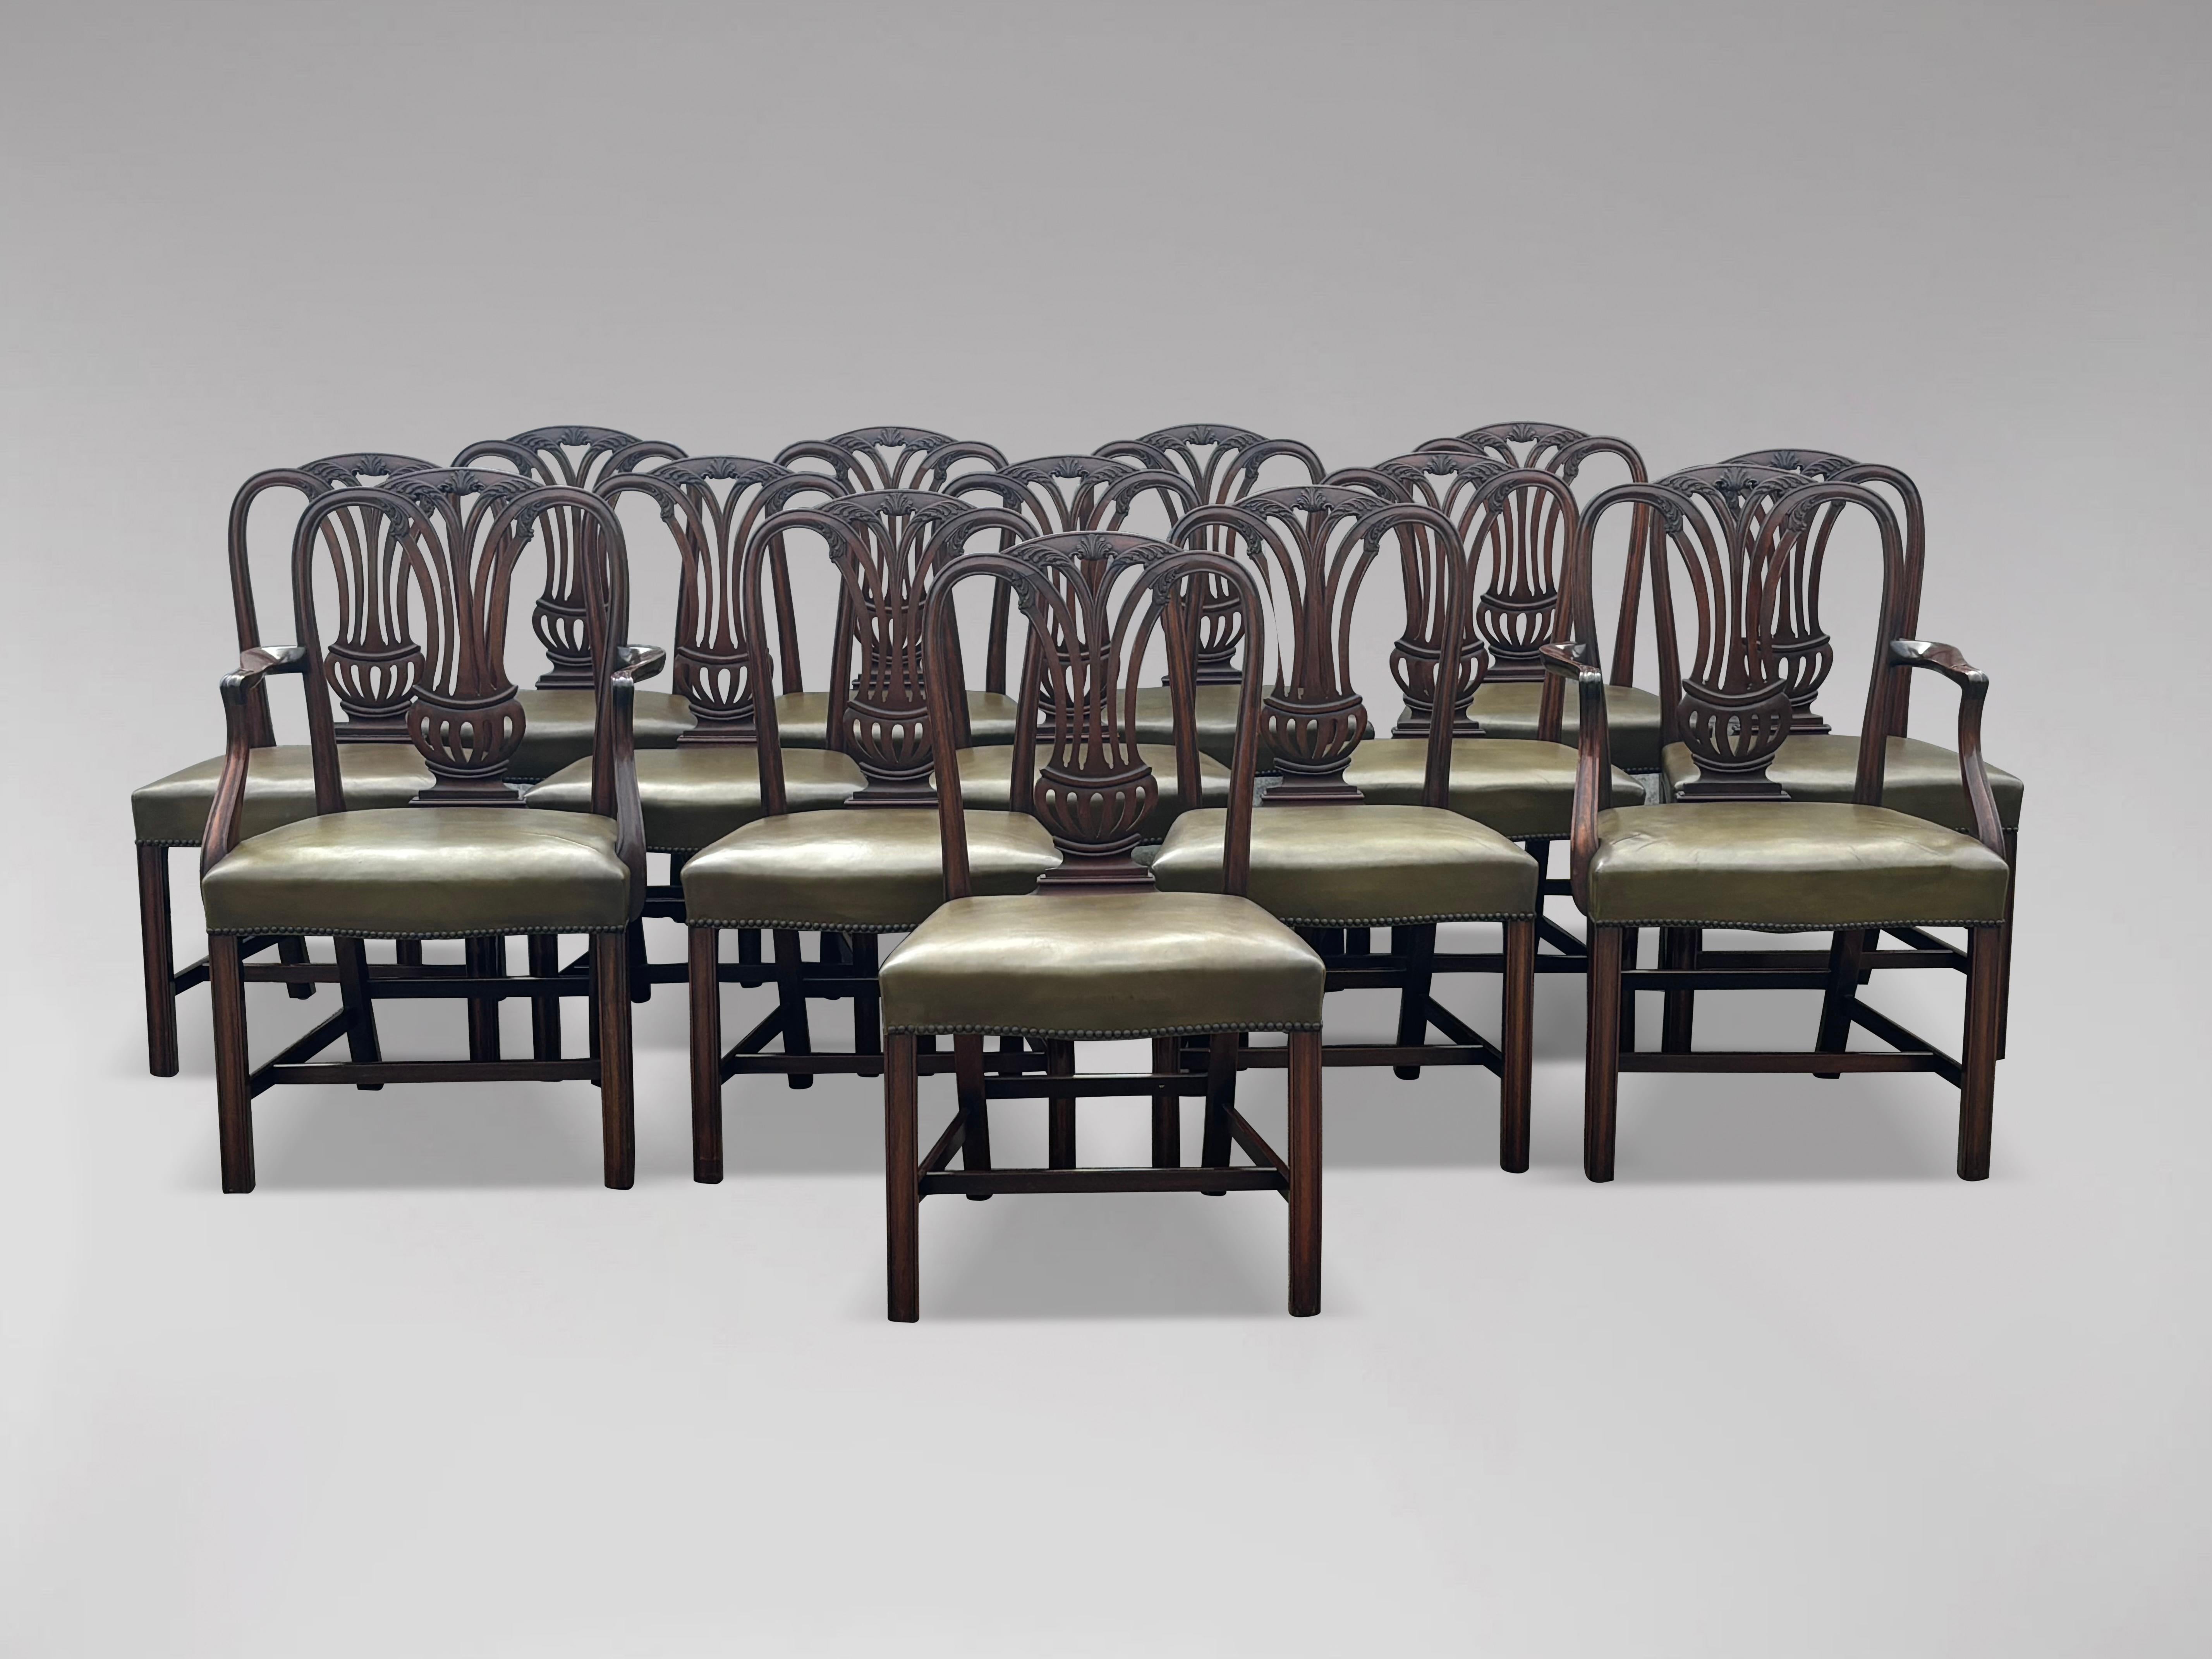 Ein hochwertiger, großer Satz von 14 georgianischen Mahagoni-Esszimmerstühlen im Hepplewhite-Stil von guter Farbe und gutem Zustand mit breiten, neu gepolsterten Ledersitzen, die ein großzügiges, breites Profil haben und bequemes Sitzen ermöglichen.